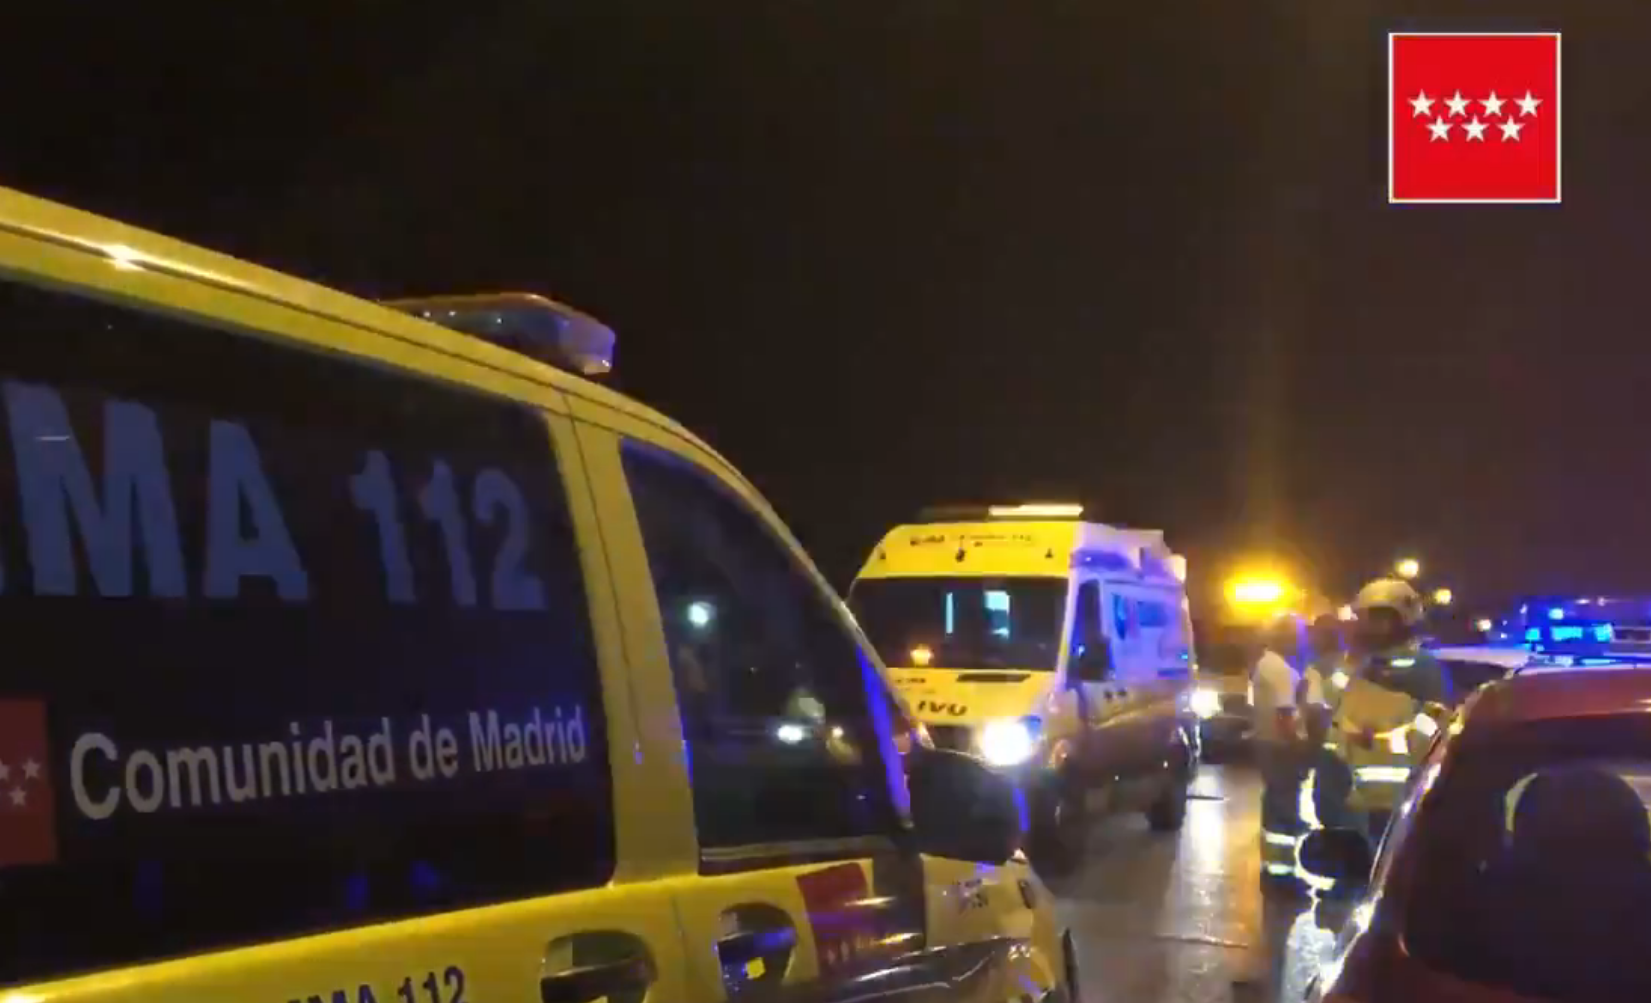 SUMMA112 confirma la muerte de una mujer y traslada grave a otra, tras resultar heridas por un arma de fuego en Aranjuez. Twitter @112cmadrid